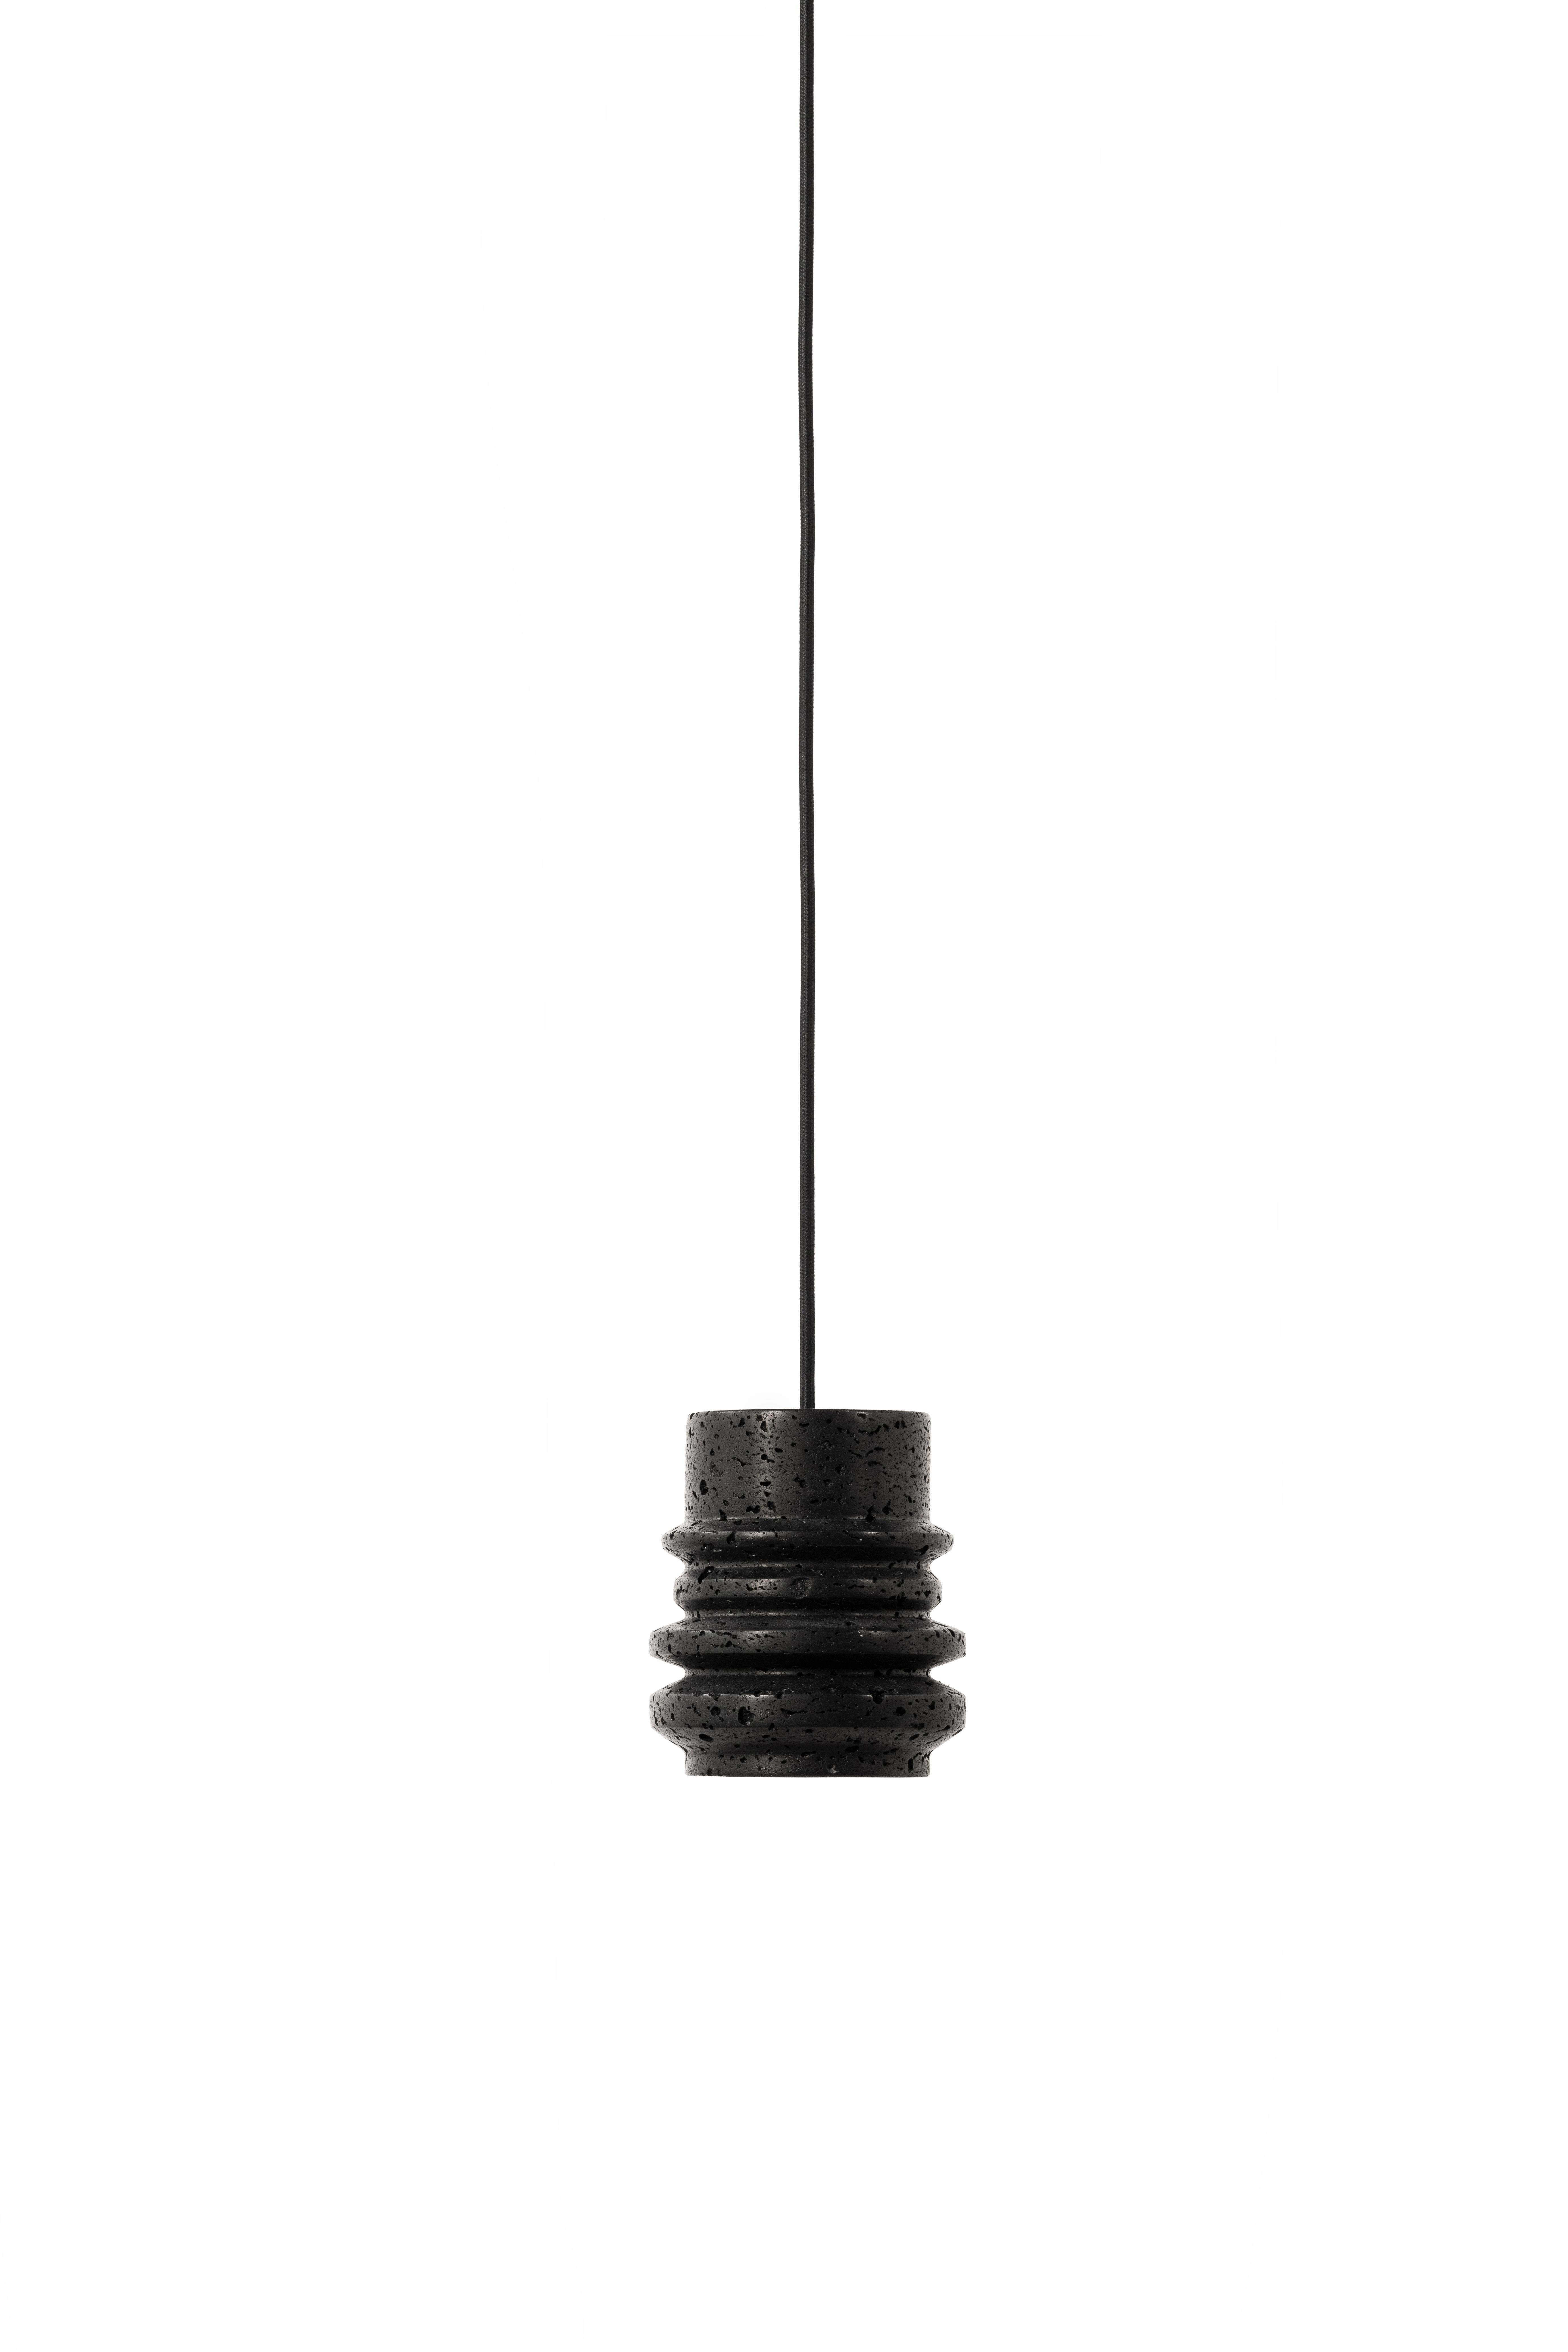 Lampe suspendue 'CIRCLE' de Buzao x Bentu design.
Pierre de lave noire

Taille : 15 cm de haut, 13 cm de diamètre
Fil : 2 mètres noir (réglable)
Type de lampe : E27 LED 3W 100-240V 80Ra 200LM 2700K - Compatible avec le système électrique